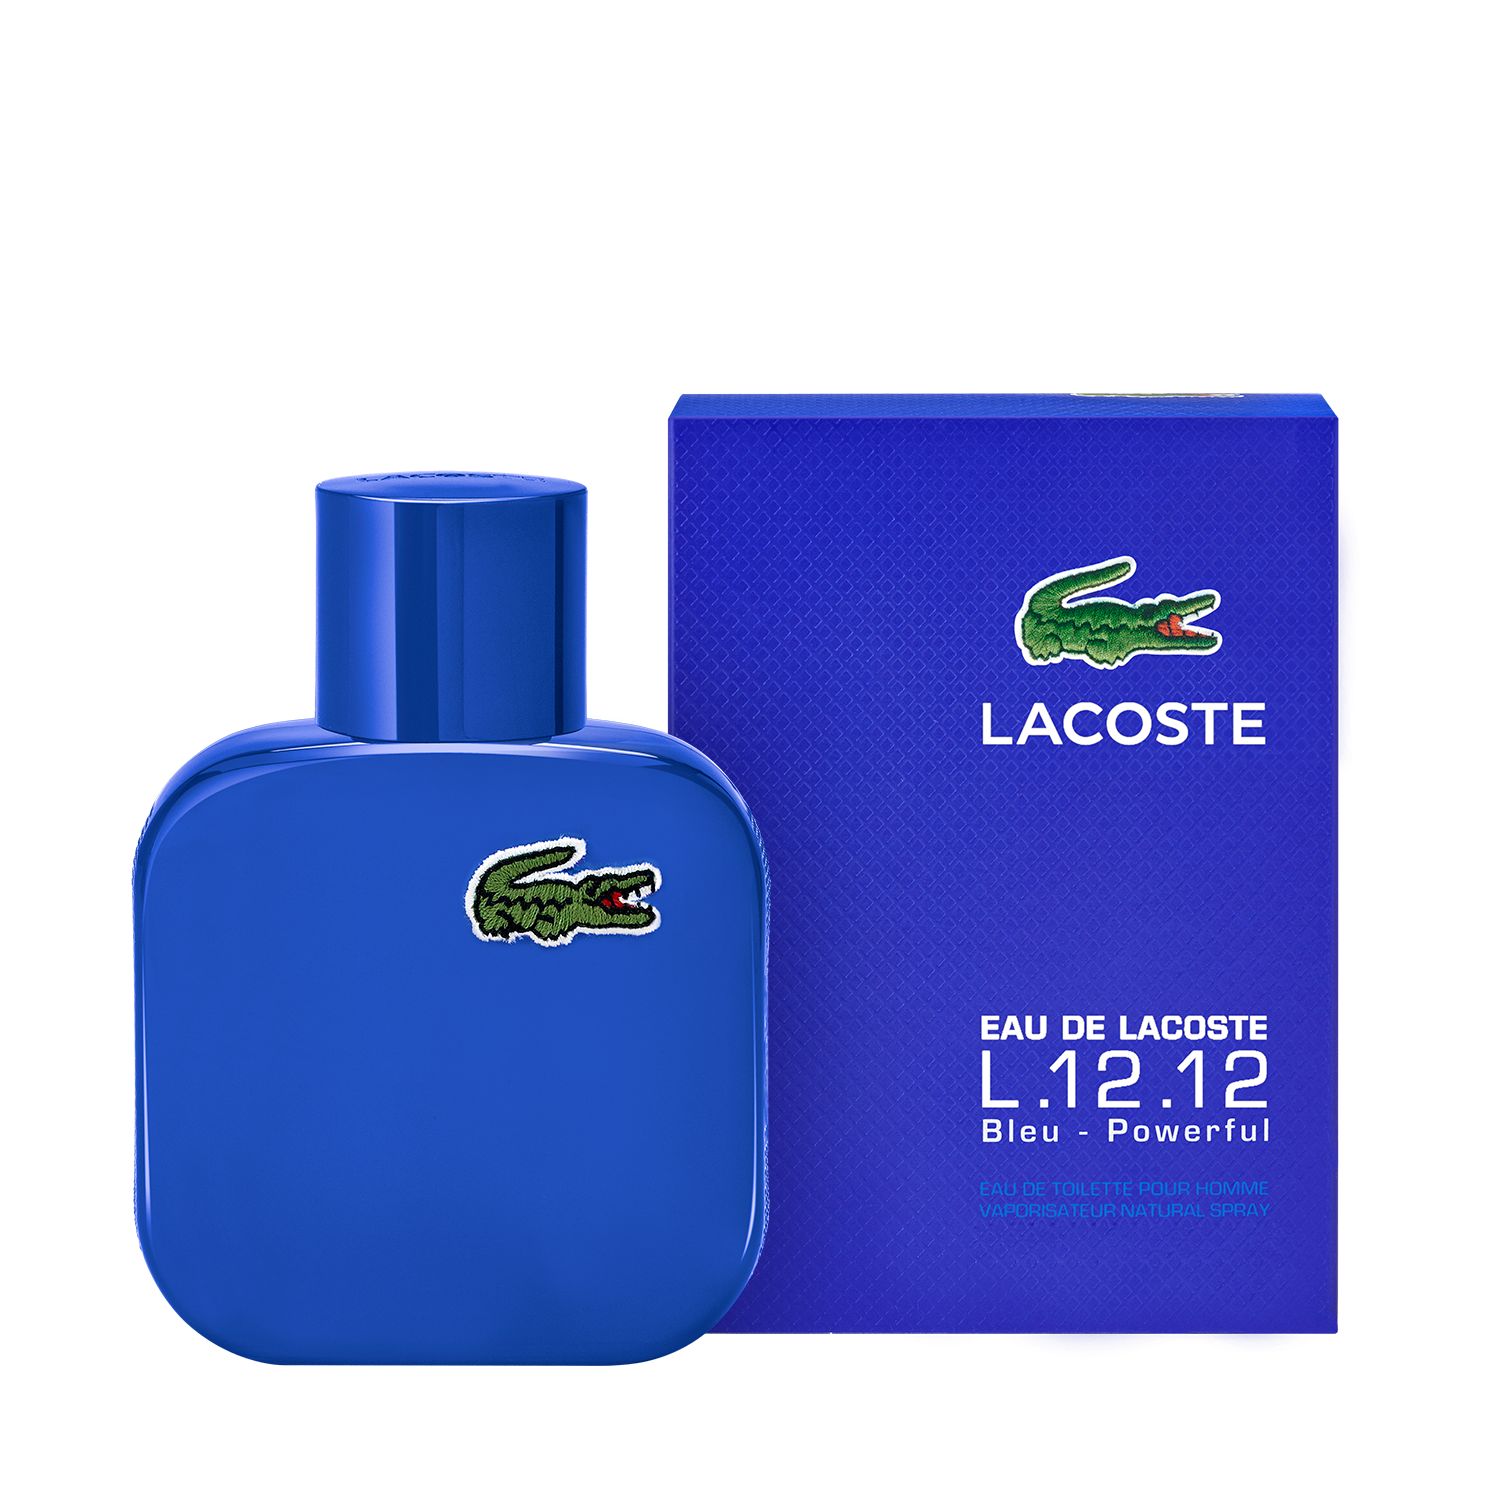 lacoste cologne blue bottle